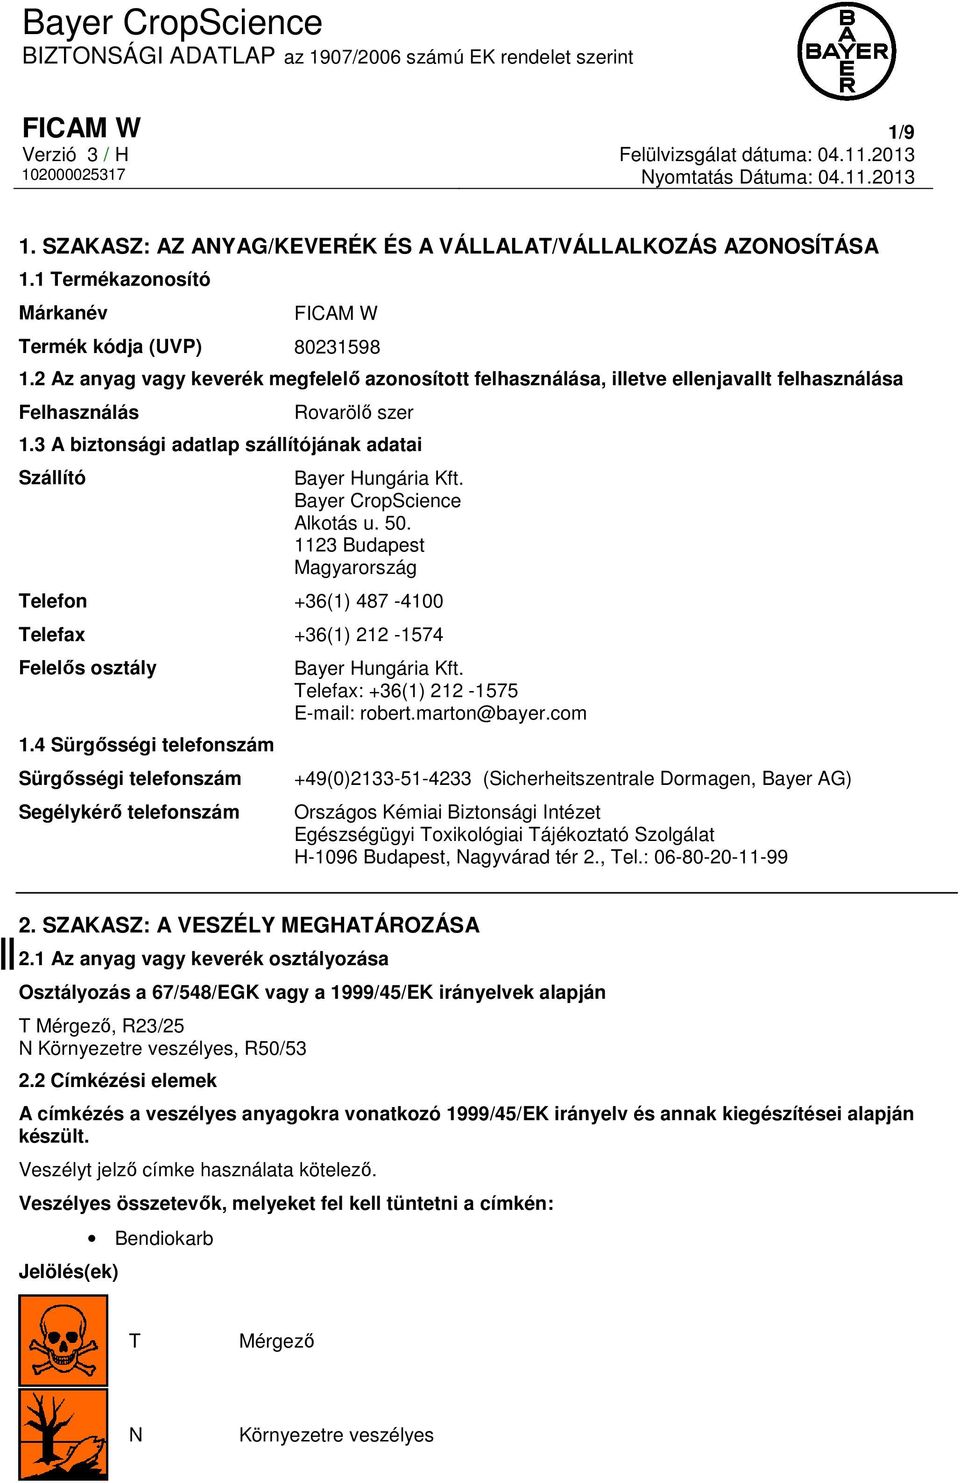 Bayer CropScience Alkotás u. 50. 1123 Budapest Magyarország Telefon +36(1) 487-4100 Telefax +36(1) 212-1574 Felelős osztály 1.